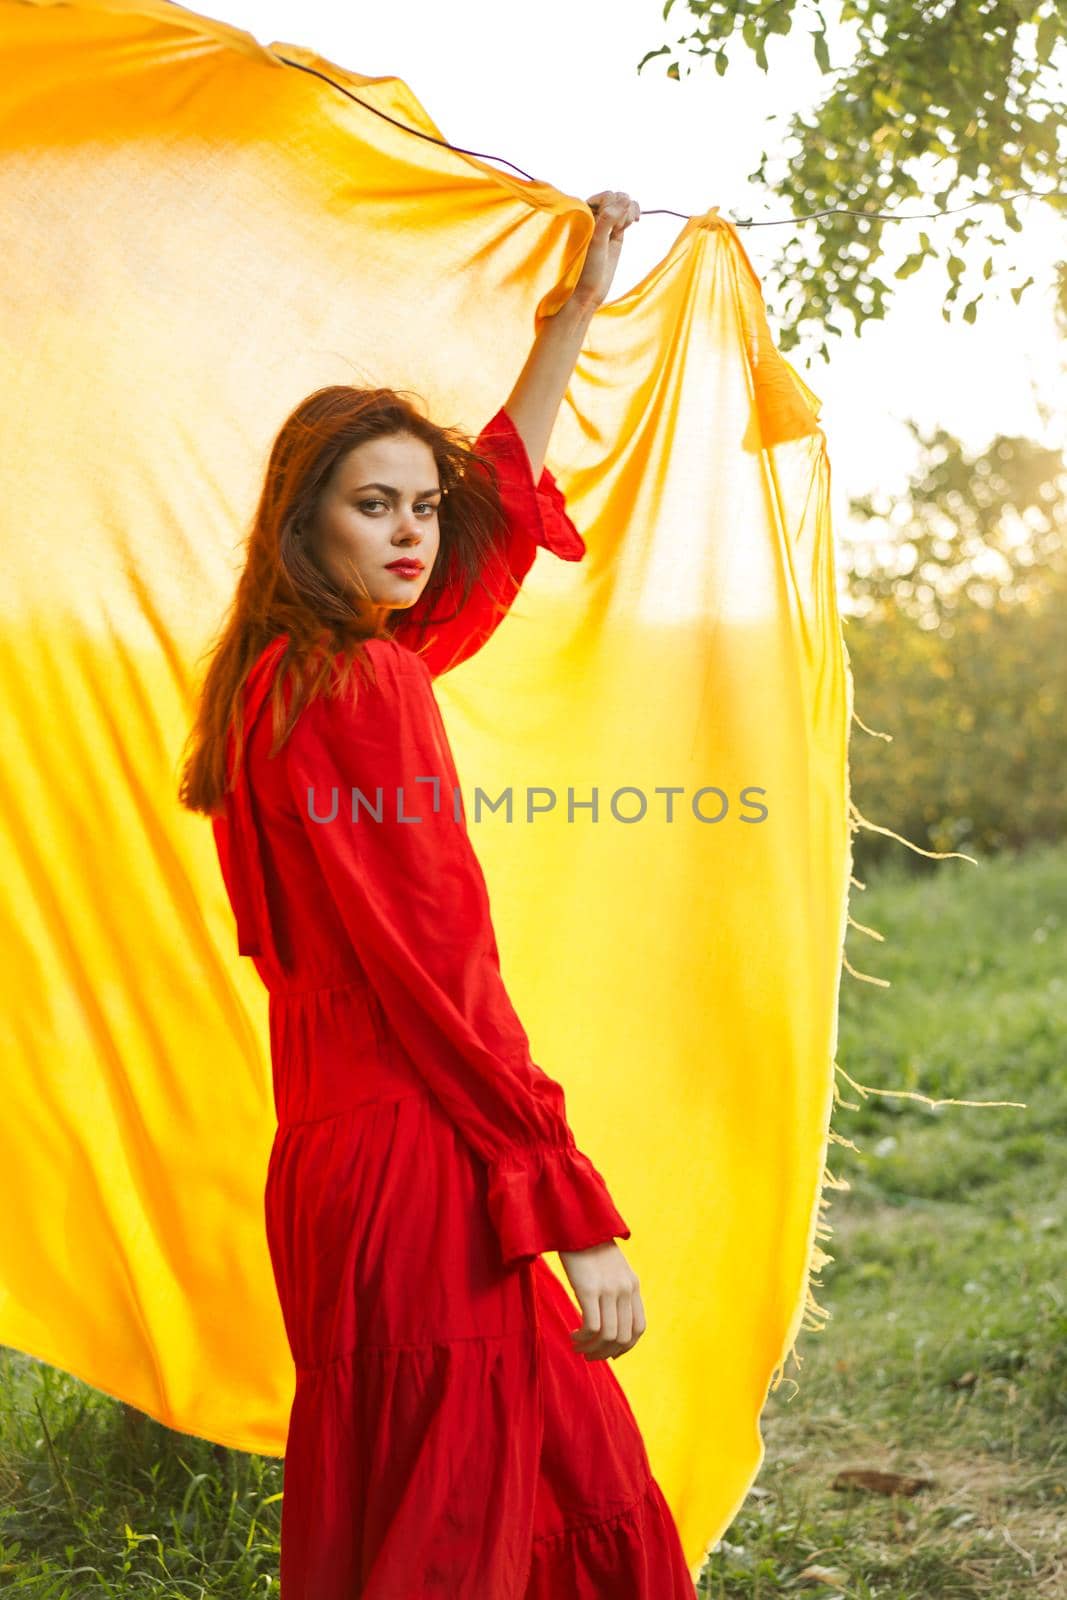 pretty woman nature yellow cloth fresh air glamor by Vichizh